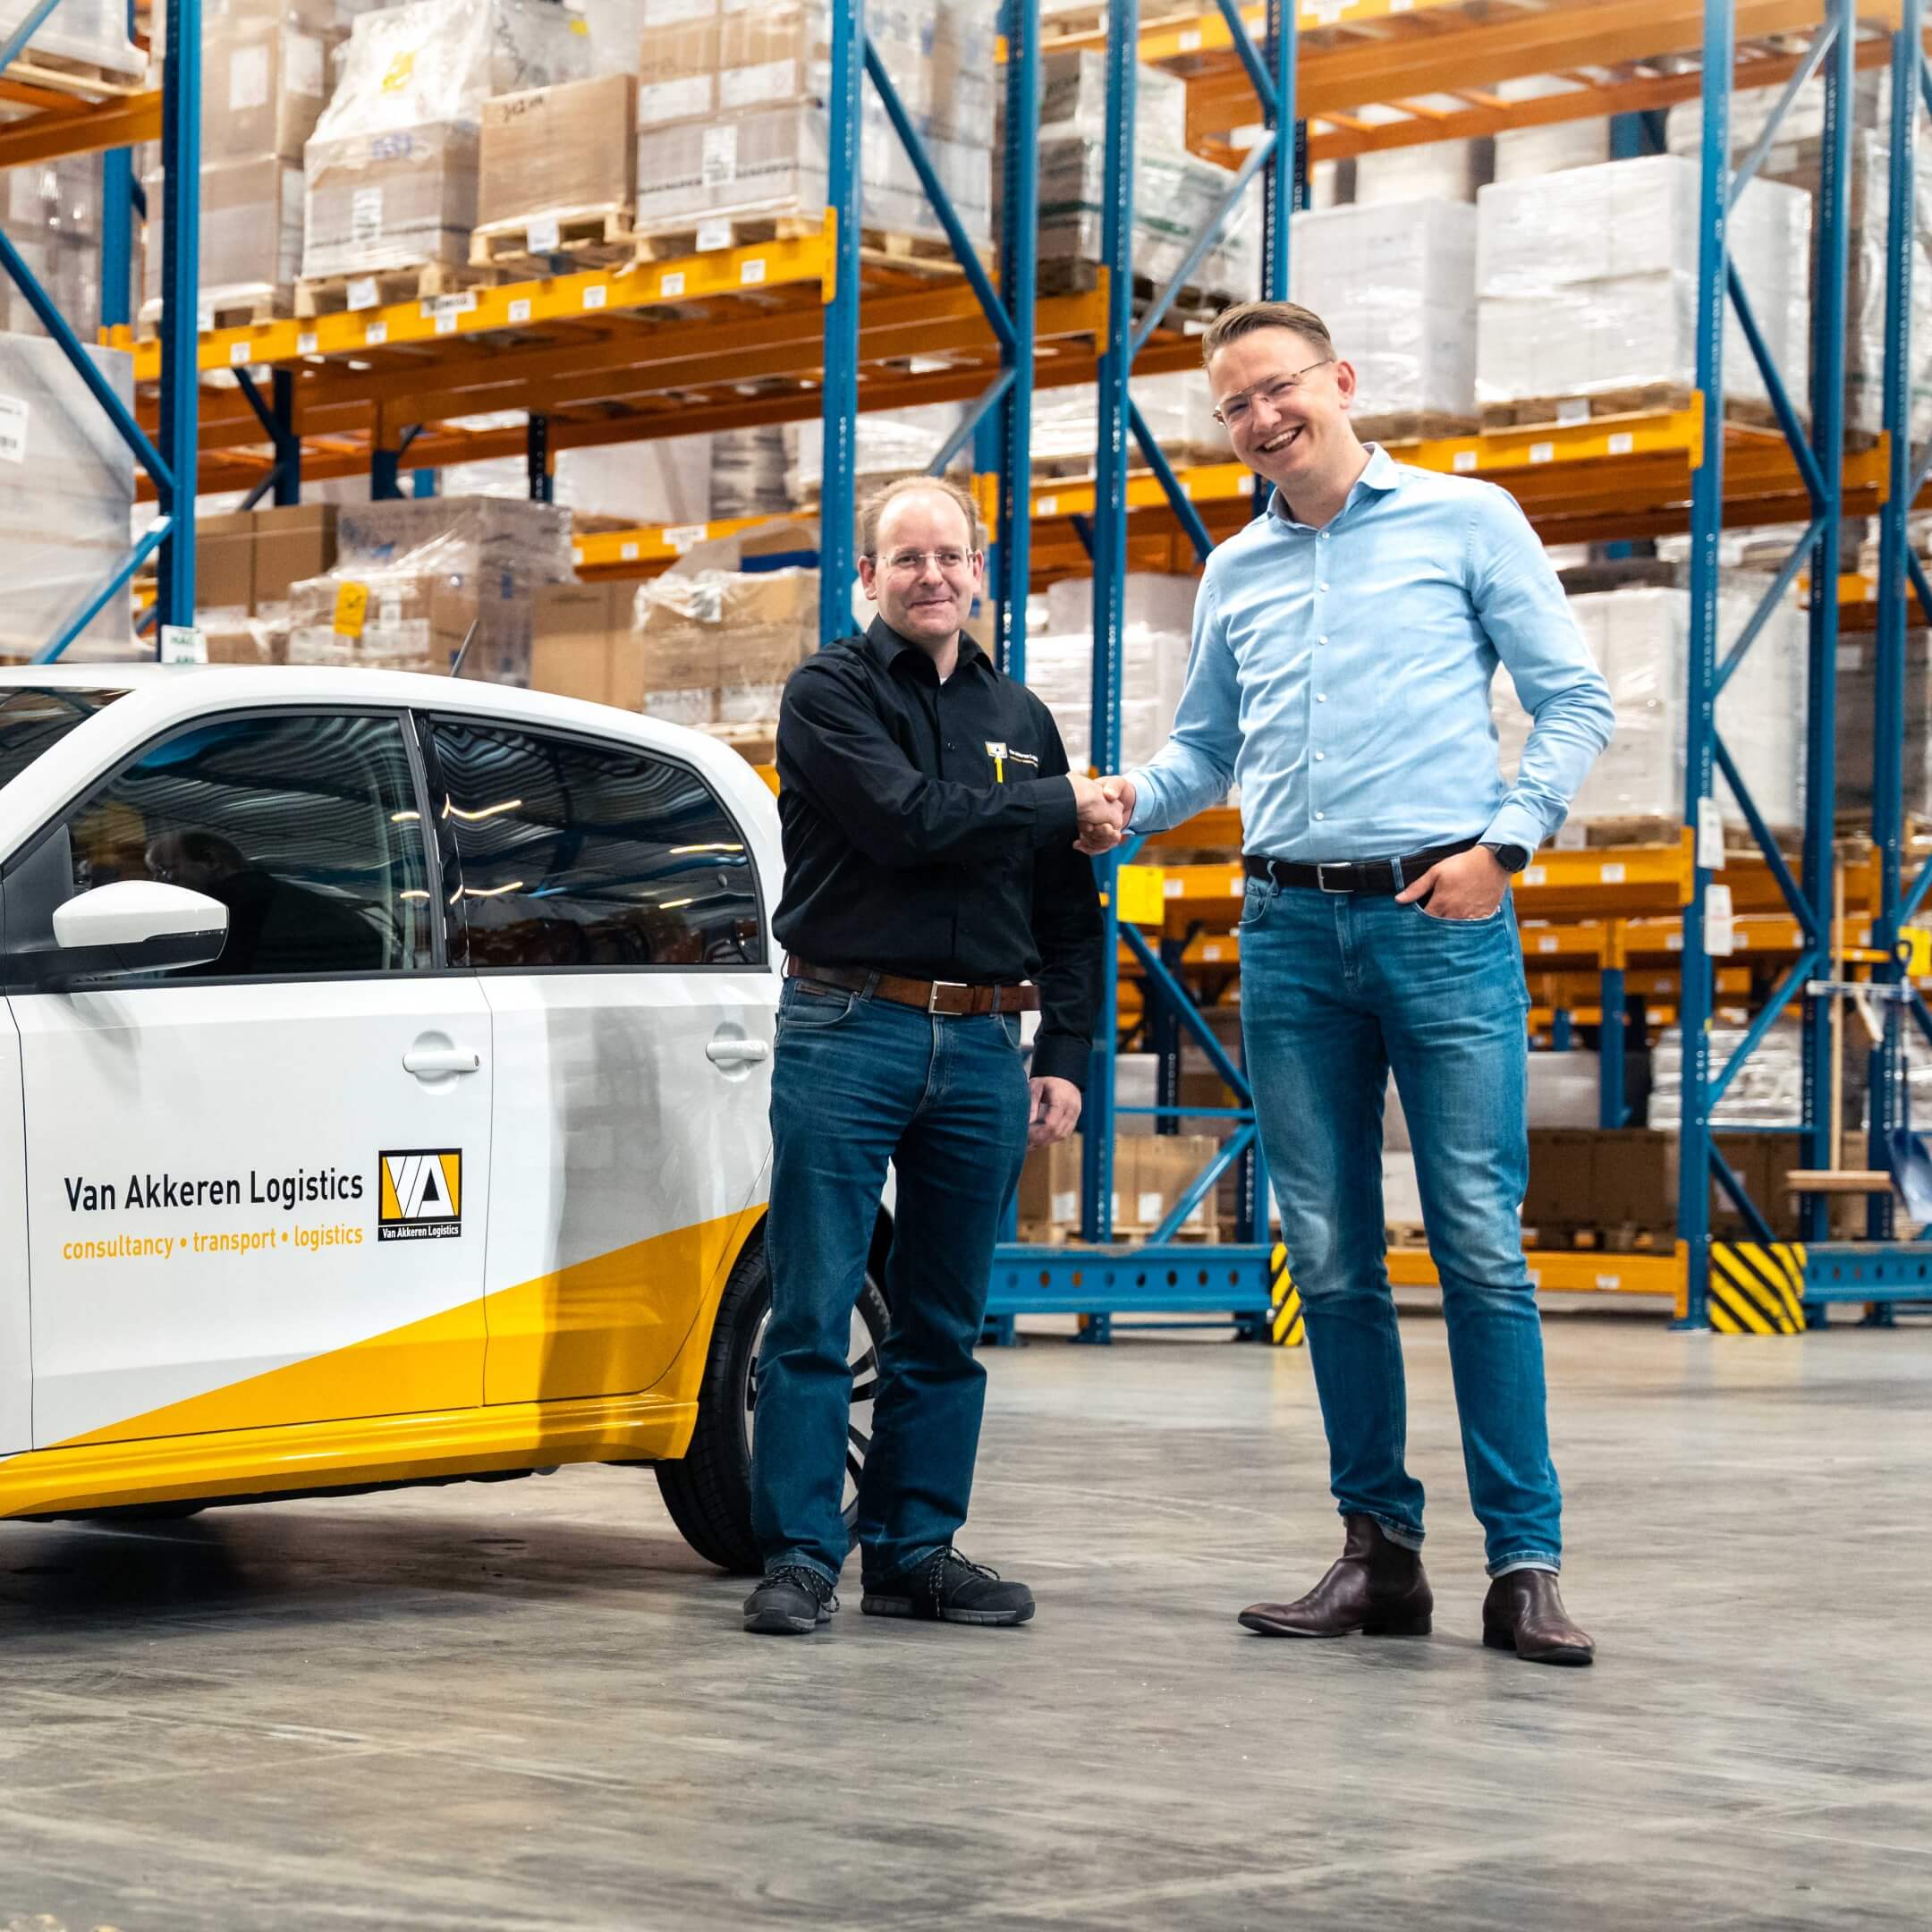 PEPE Wagenparkbeheer mobiliteitsoplossingen voor van Akkeren Logistics in Roosendaal